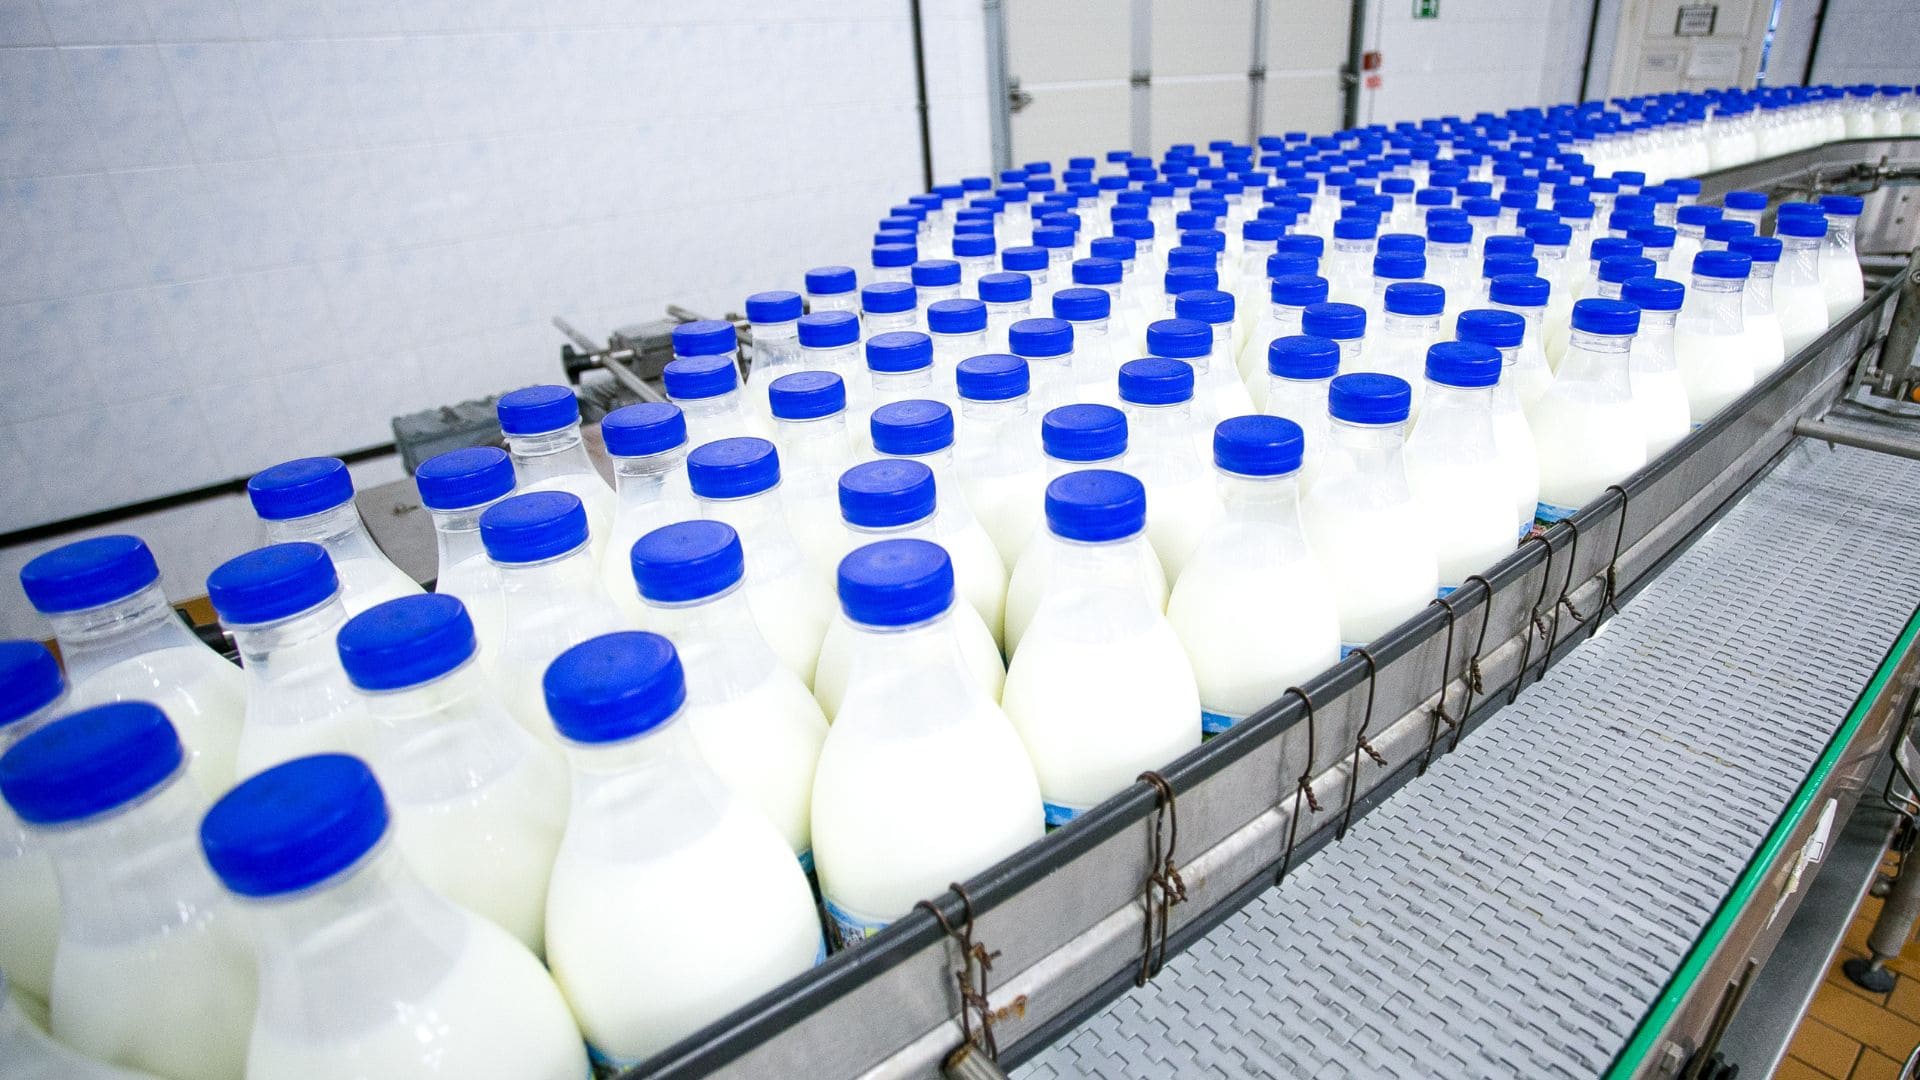 Sala Refrigeracion Industria Lactea: La refrigeración industrial de los lácteos